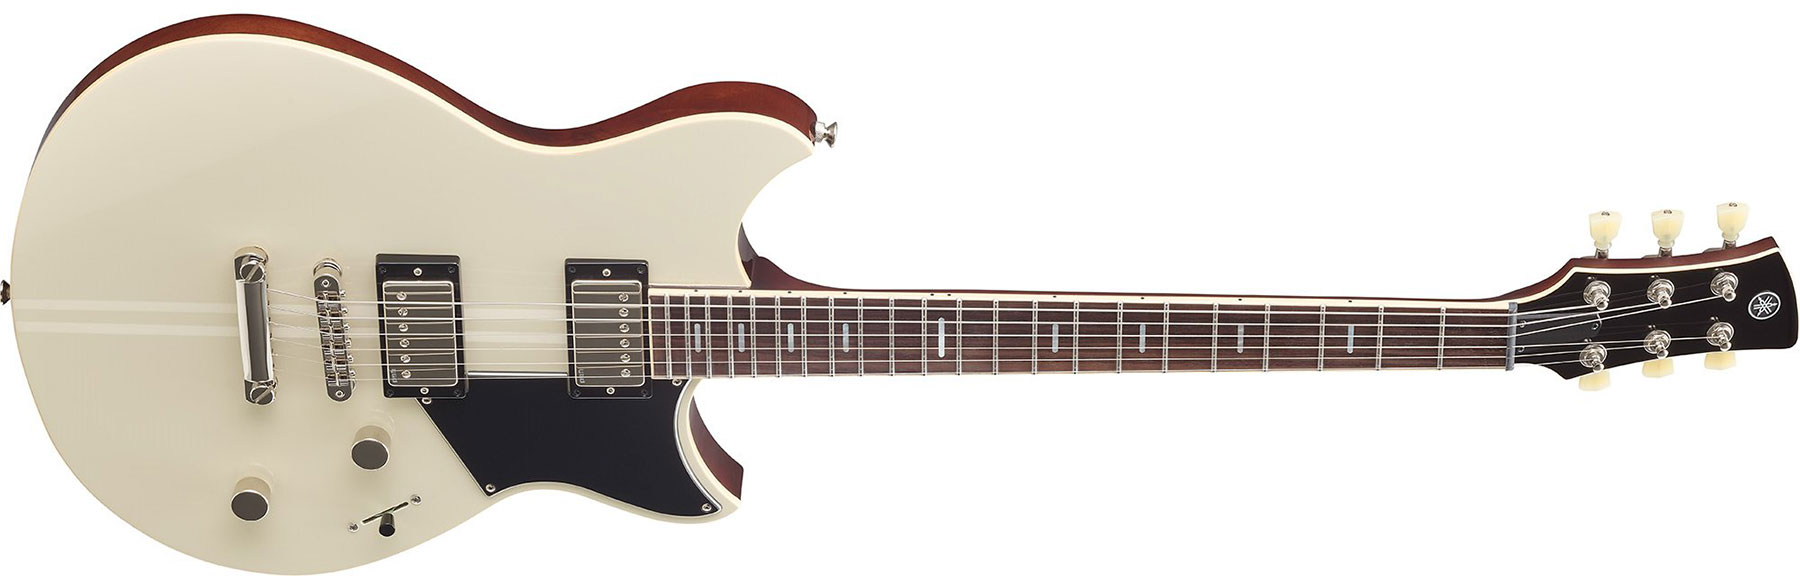 Yamaha Rss20 Revstar Standard Hh Ht Rw - Vintage White - Guitare Électrique Double Cut - Variation 1